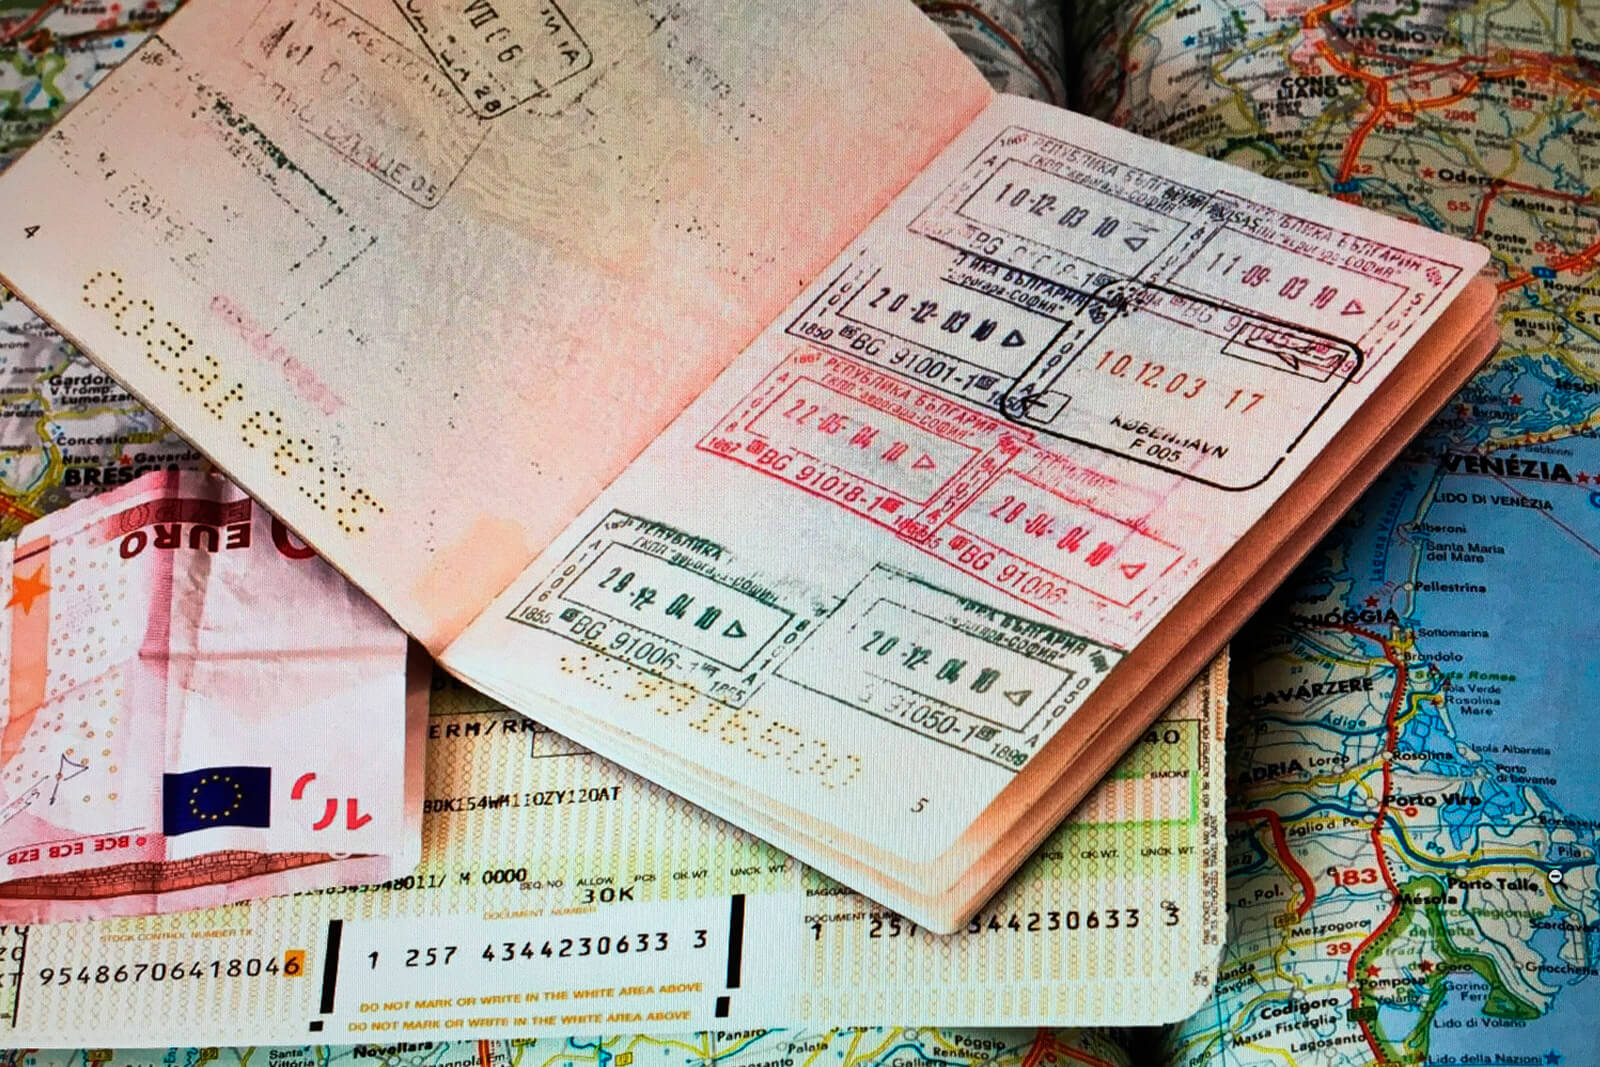 Что такое виза, и каковы особенности ее получения?